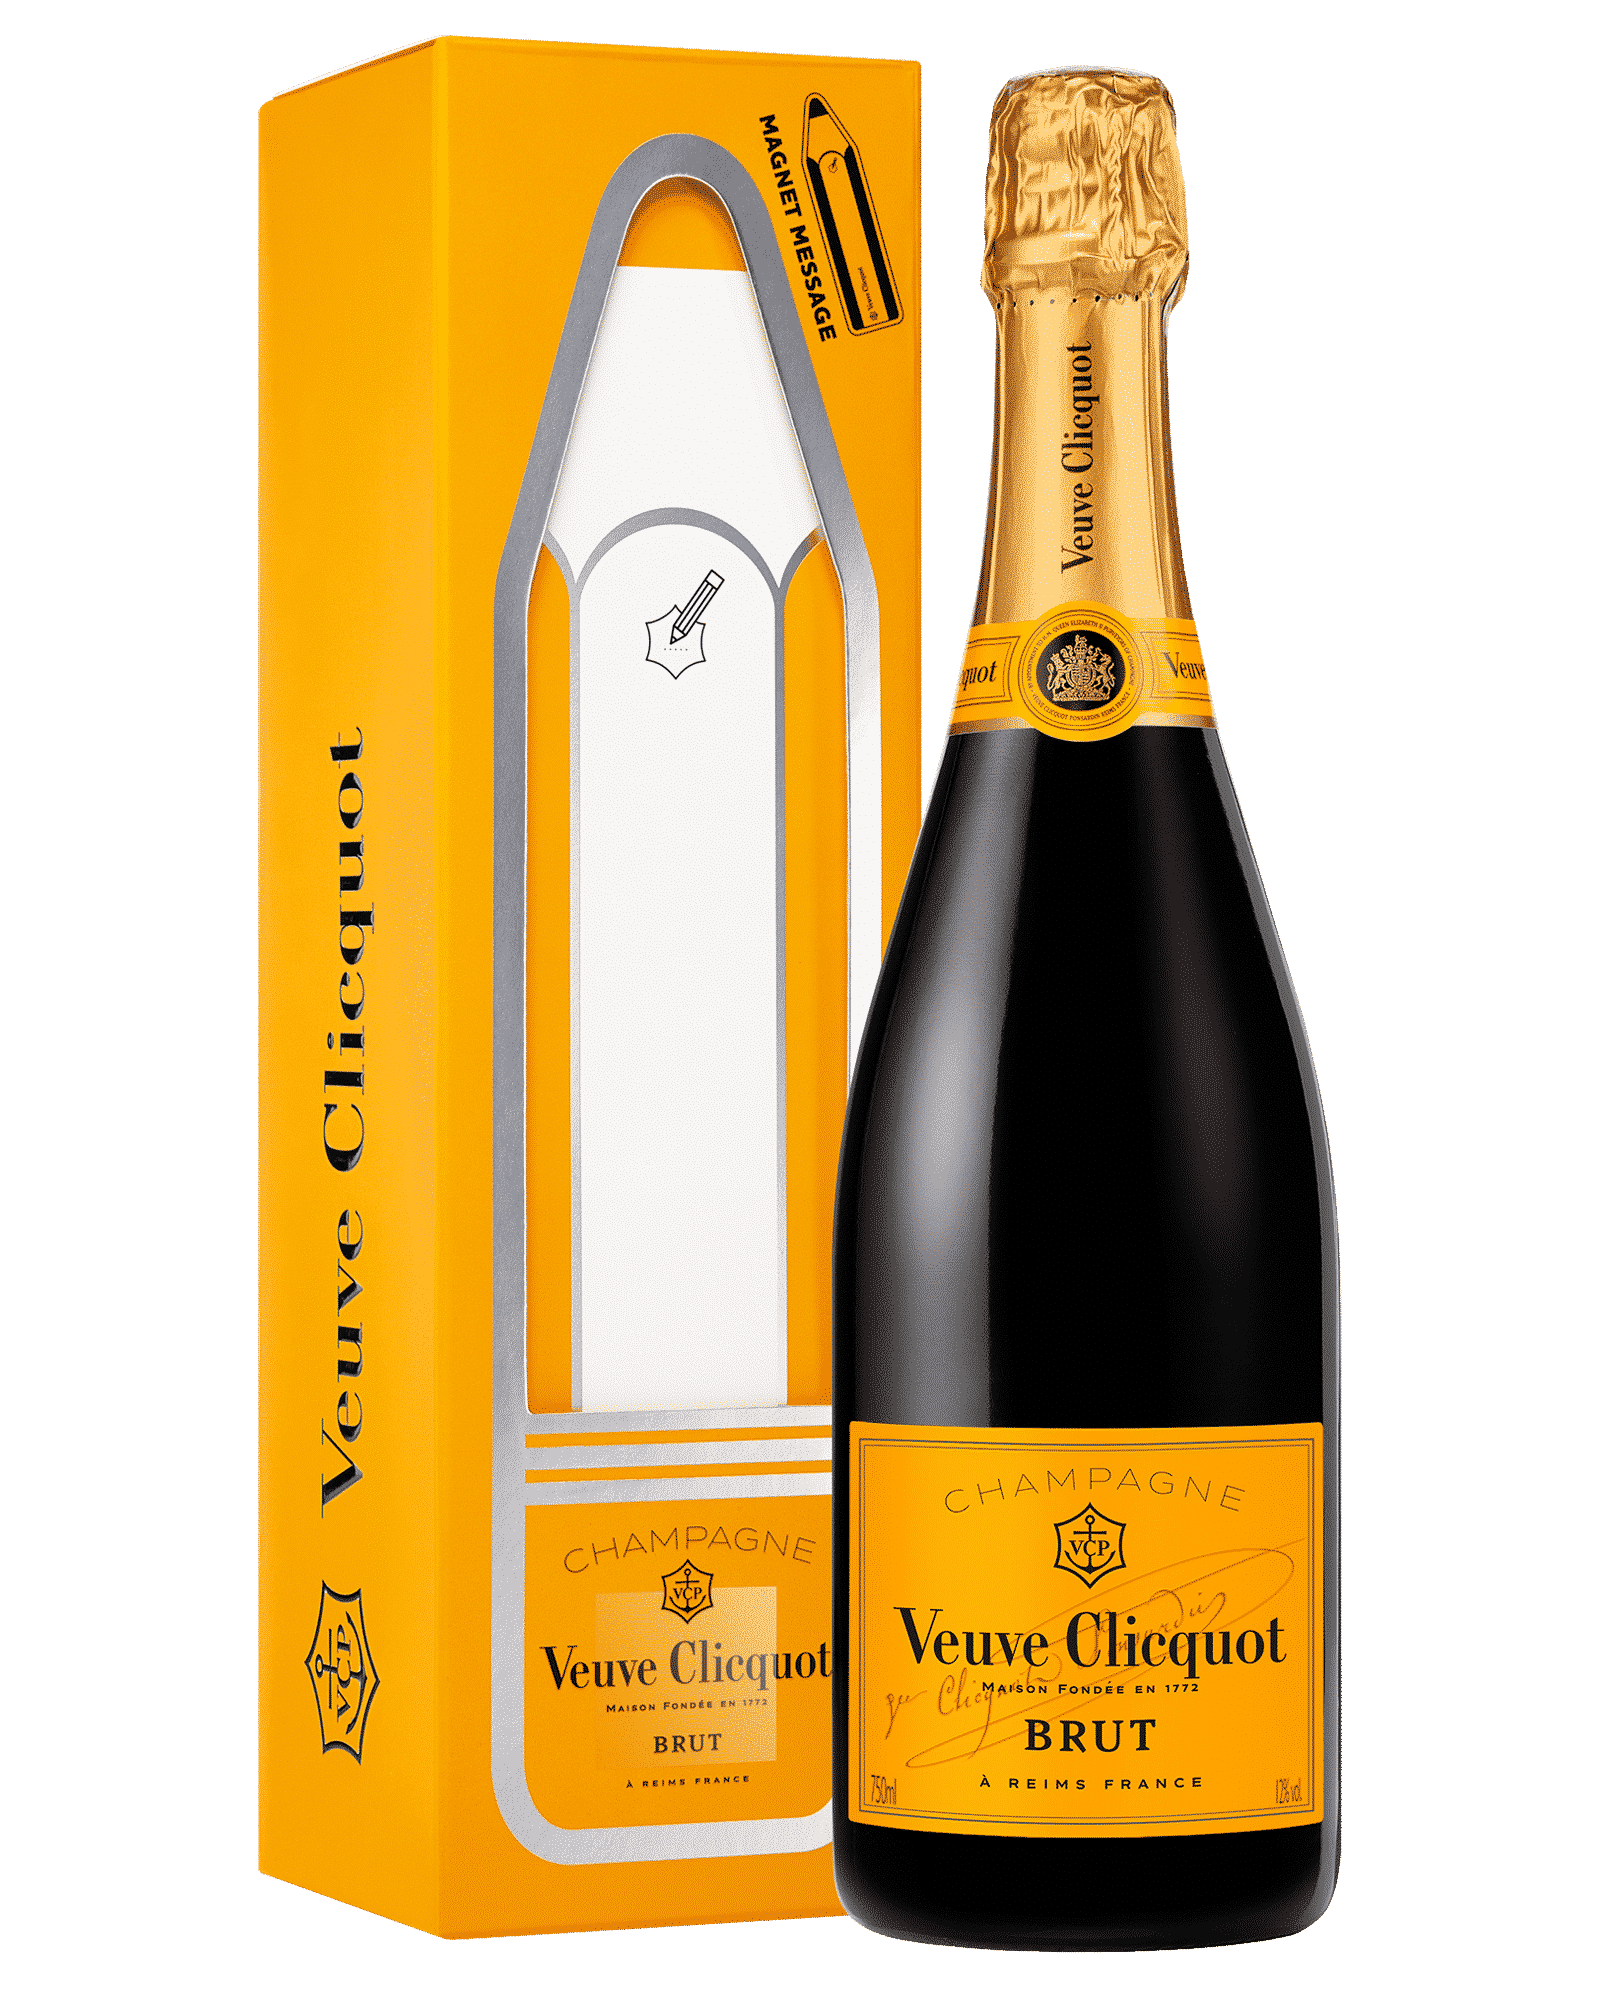 Бутылка вдовы клико. Шампанское Veuve Clicquot, Brut, Gift Box Magnet message 0,75 л. Шампанское Veuve Clicquot, Brut. Вдова Клико Понсардин брют. Просекко вдова Клико.